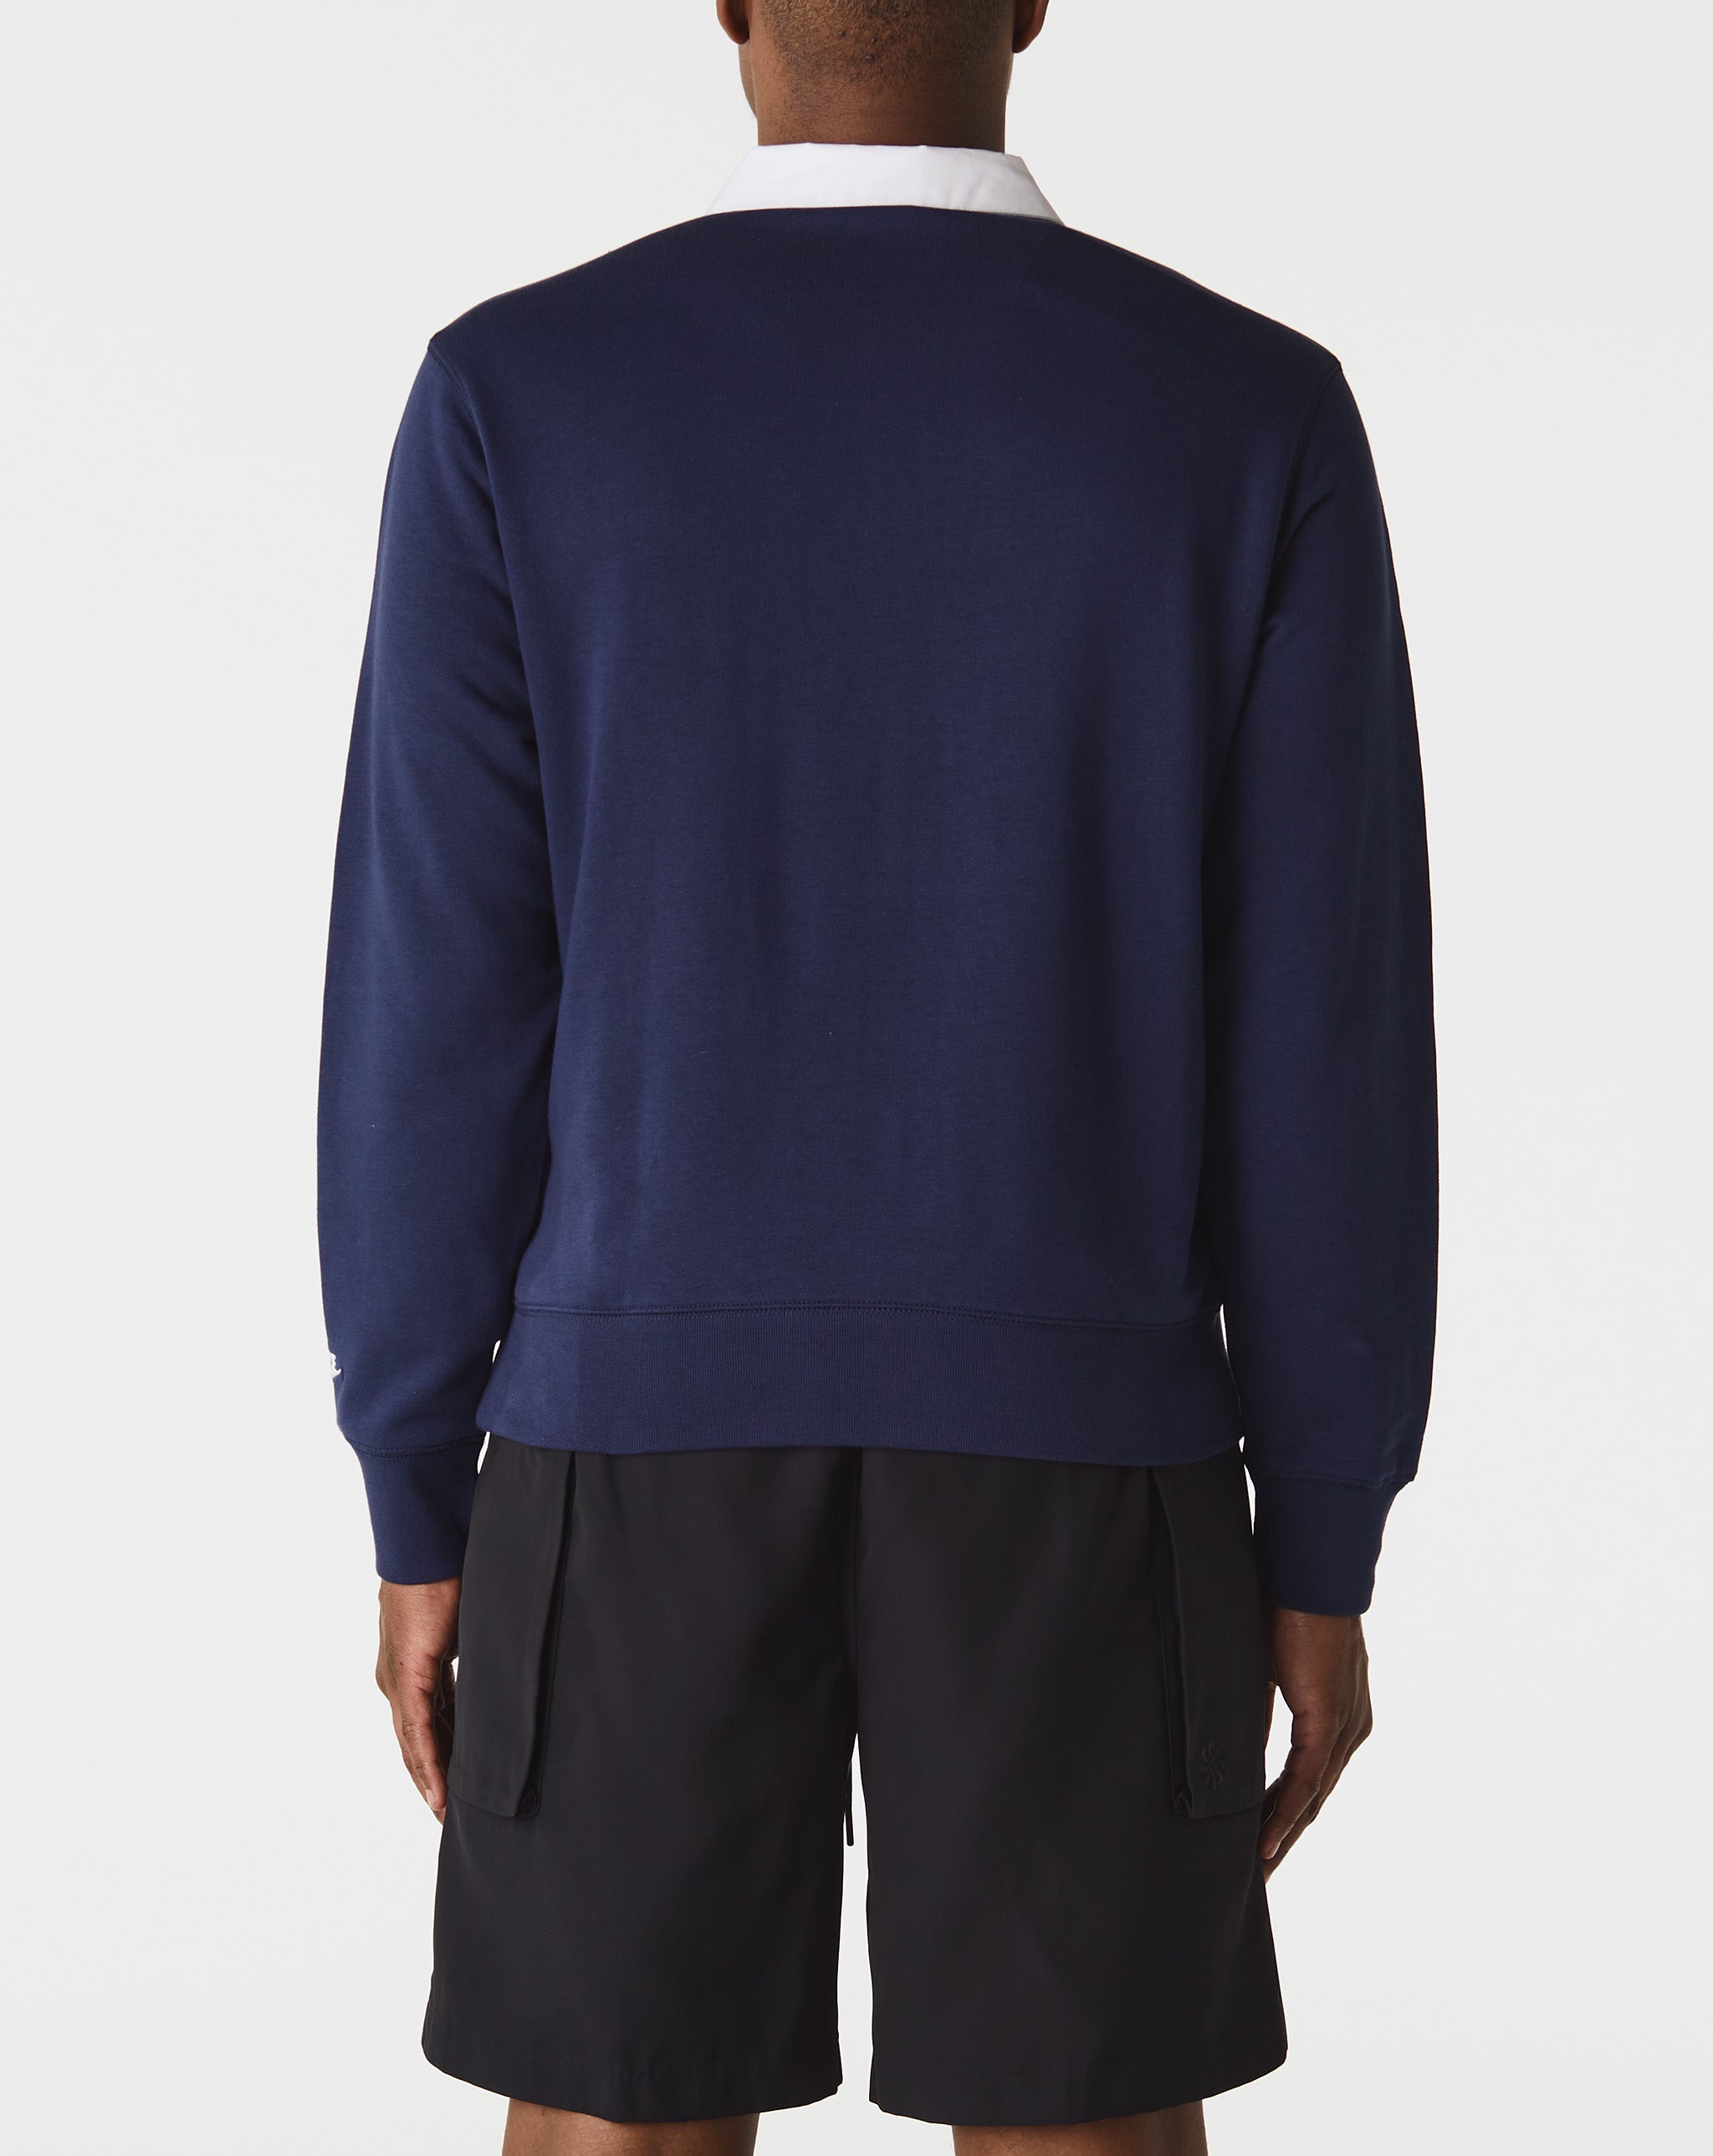 Nike Sweaters & Sweatshirts  - Cheap Urlfreeze Jordan outlet